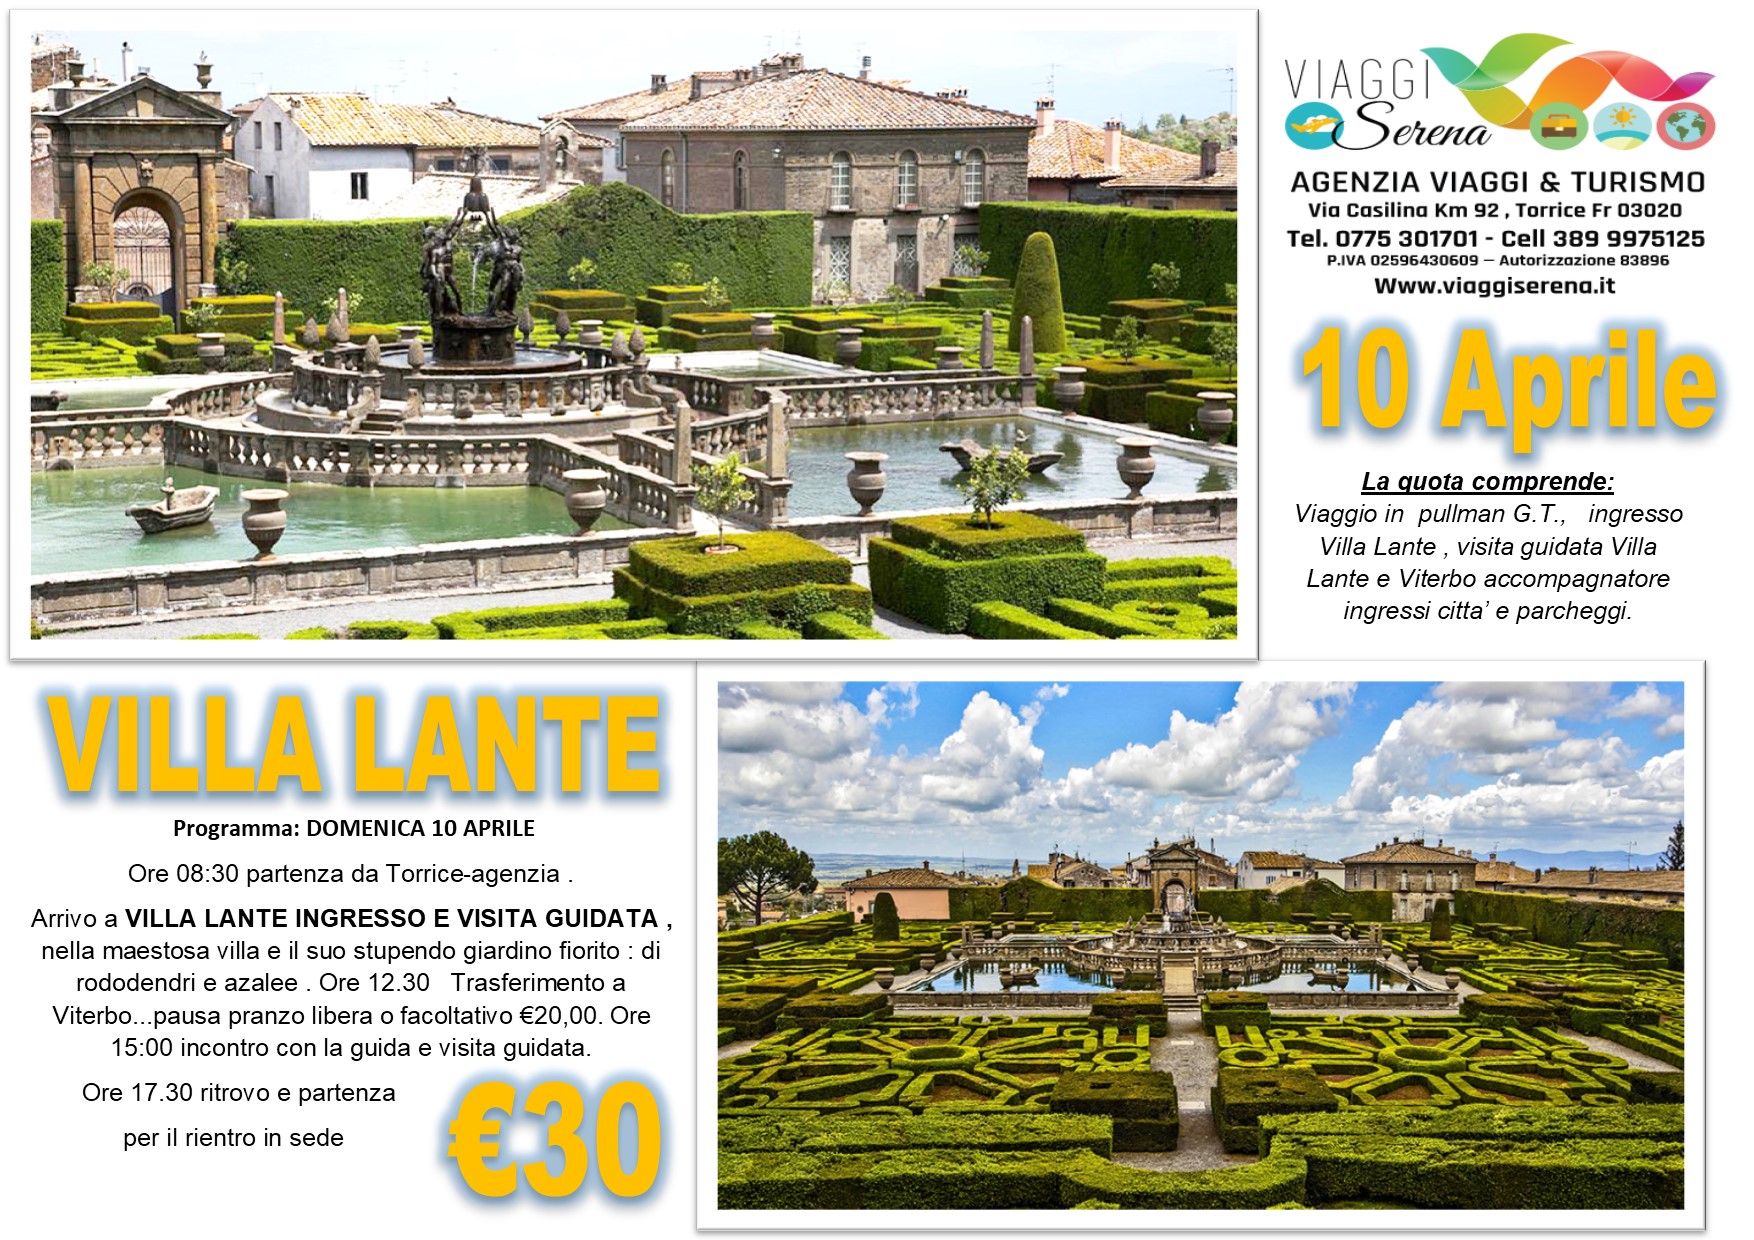 Viaggi di Gruppo: Villa Lante & Viterbo 10 Aprile € 30,00